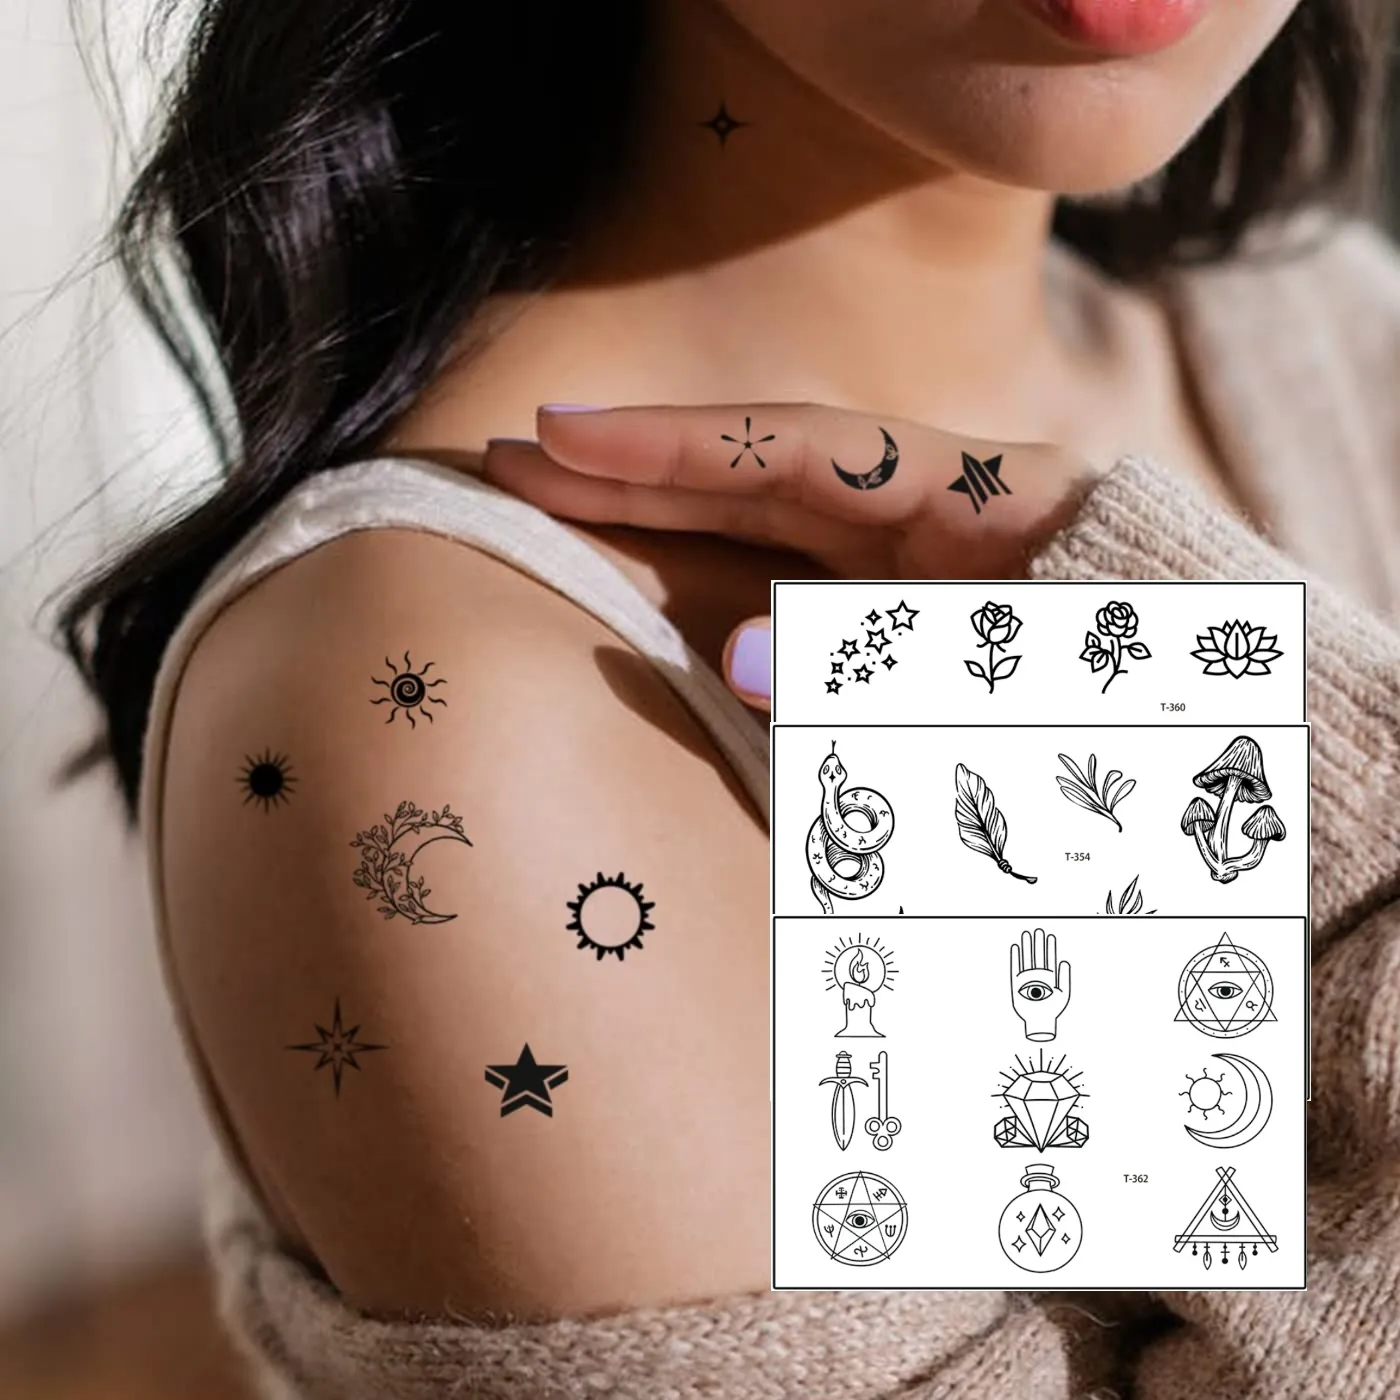 Personalizzato sole luna stelle costellazioni fiore piccolo tatuaggio adesivi per le donne degli uomini minimalista impermeabile tatuaggio temporaneo